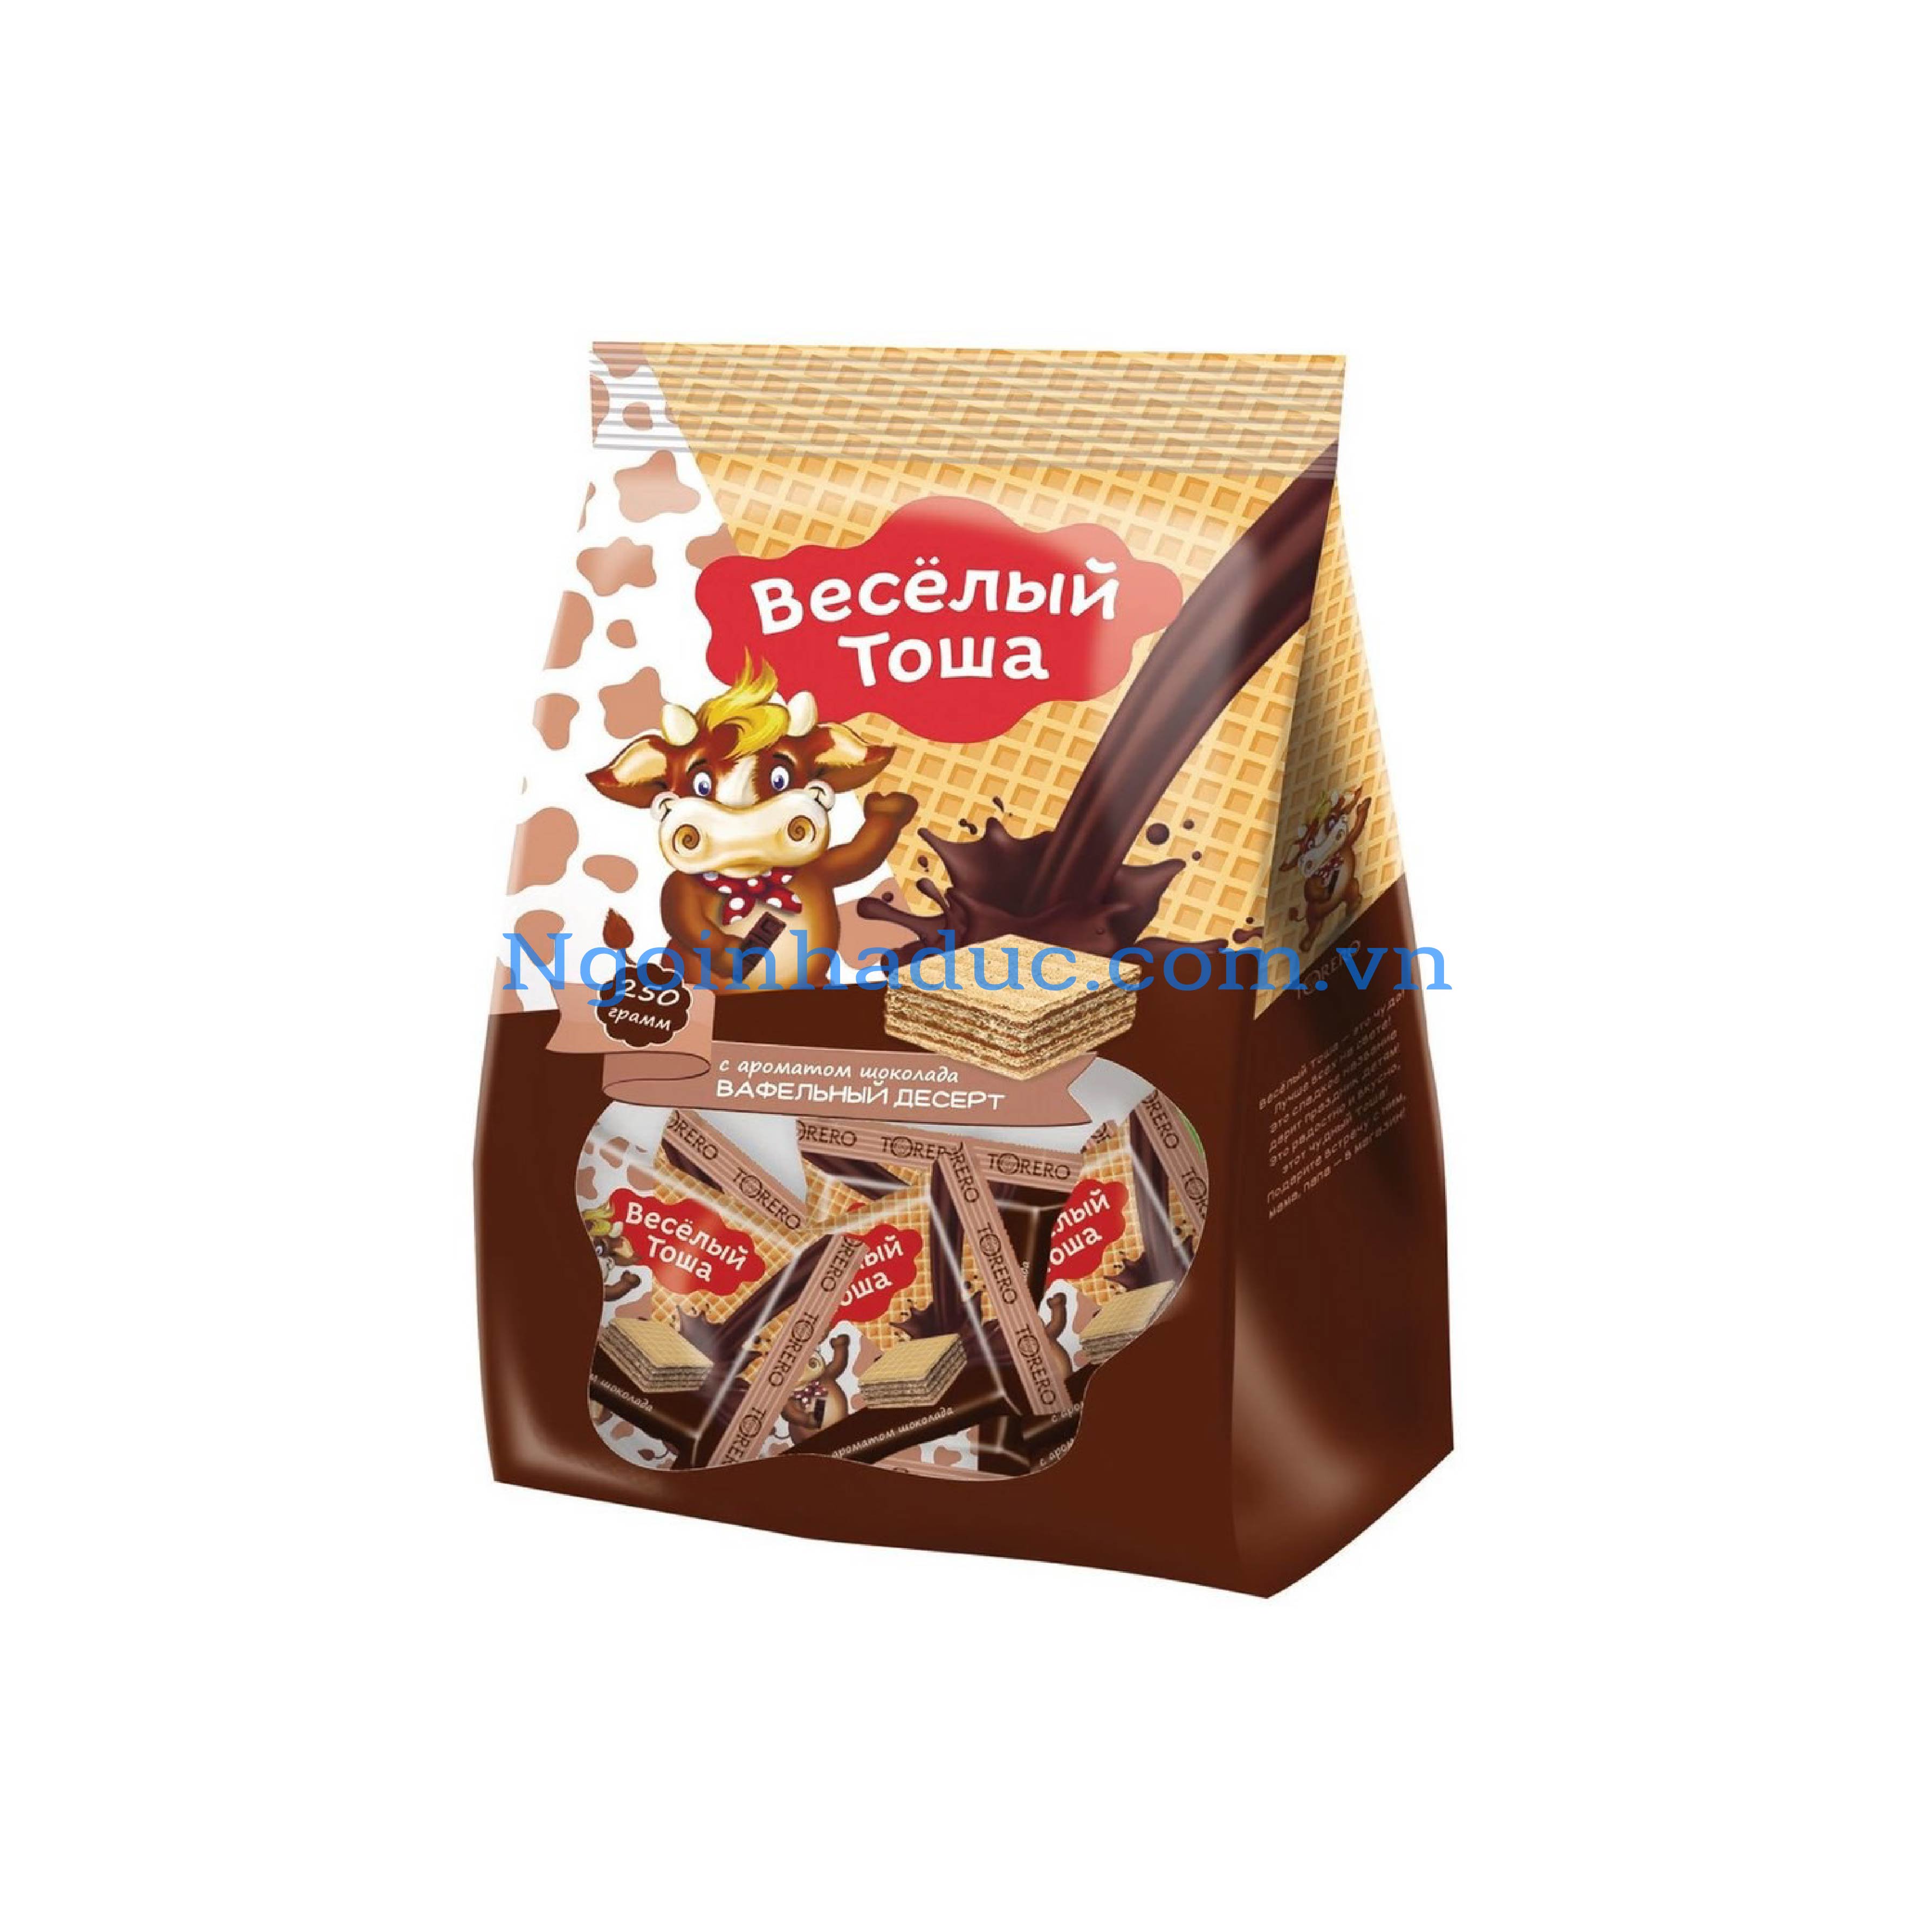 Bánh xốp Towa - Nga 250g (vị socola đen)